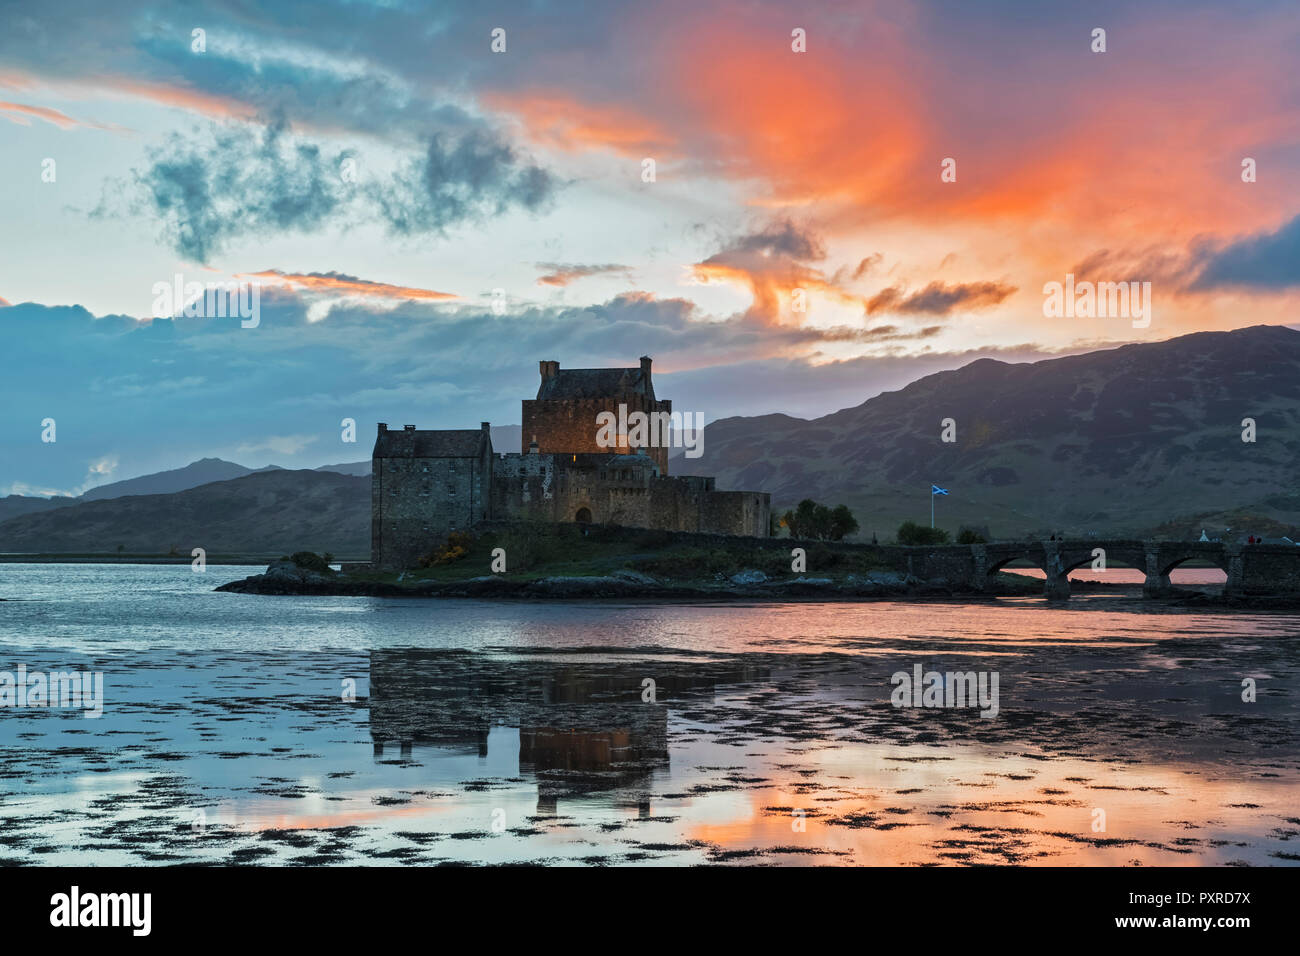 UK, Scotland, Dornie, Loch Duich, Eilean Donan Castle at sunset Stock Photo